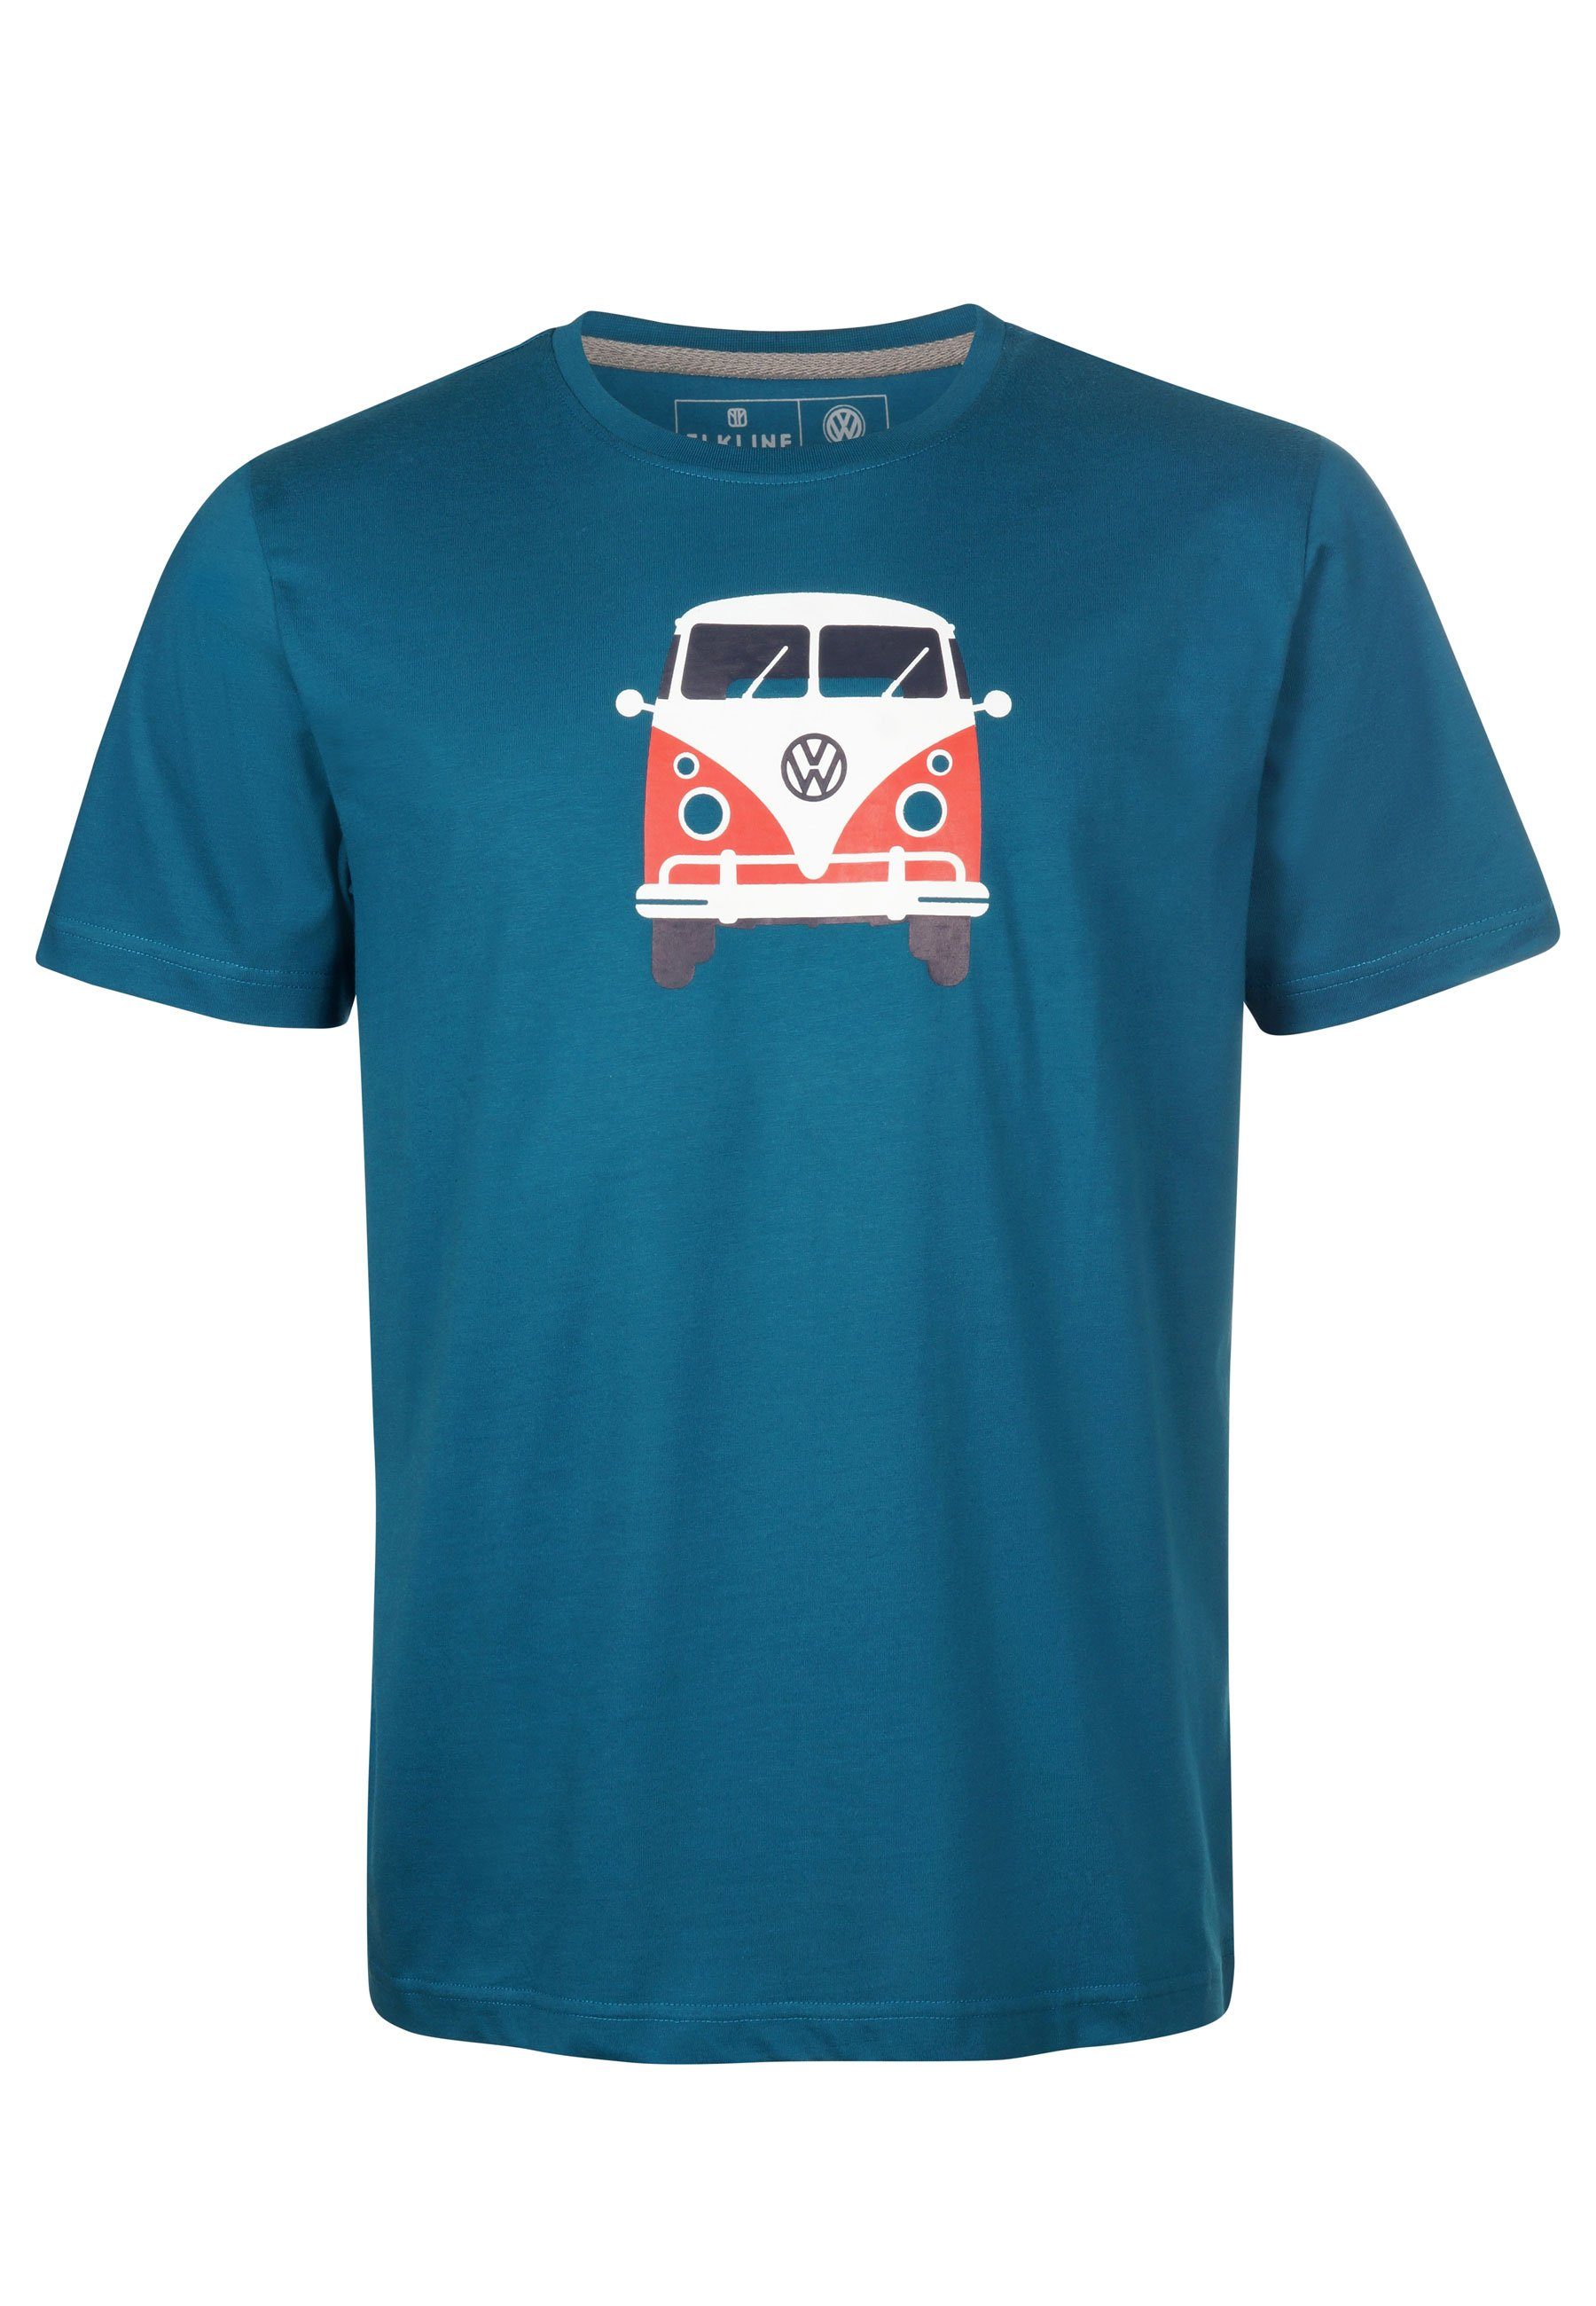 Elkline T-Shirt Methusalem lizenzierter VW Rücken Bulli coral Print Brust blue